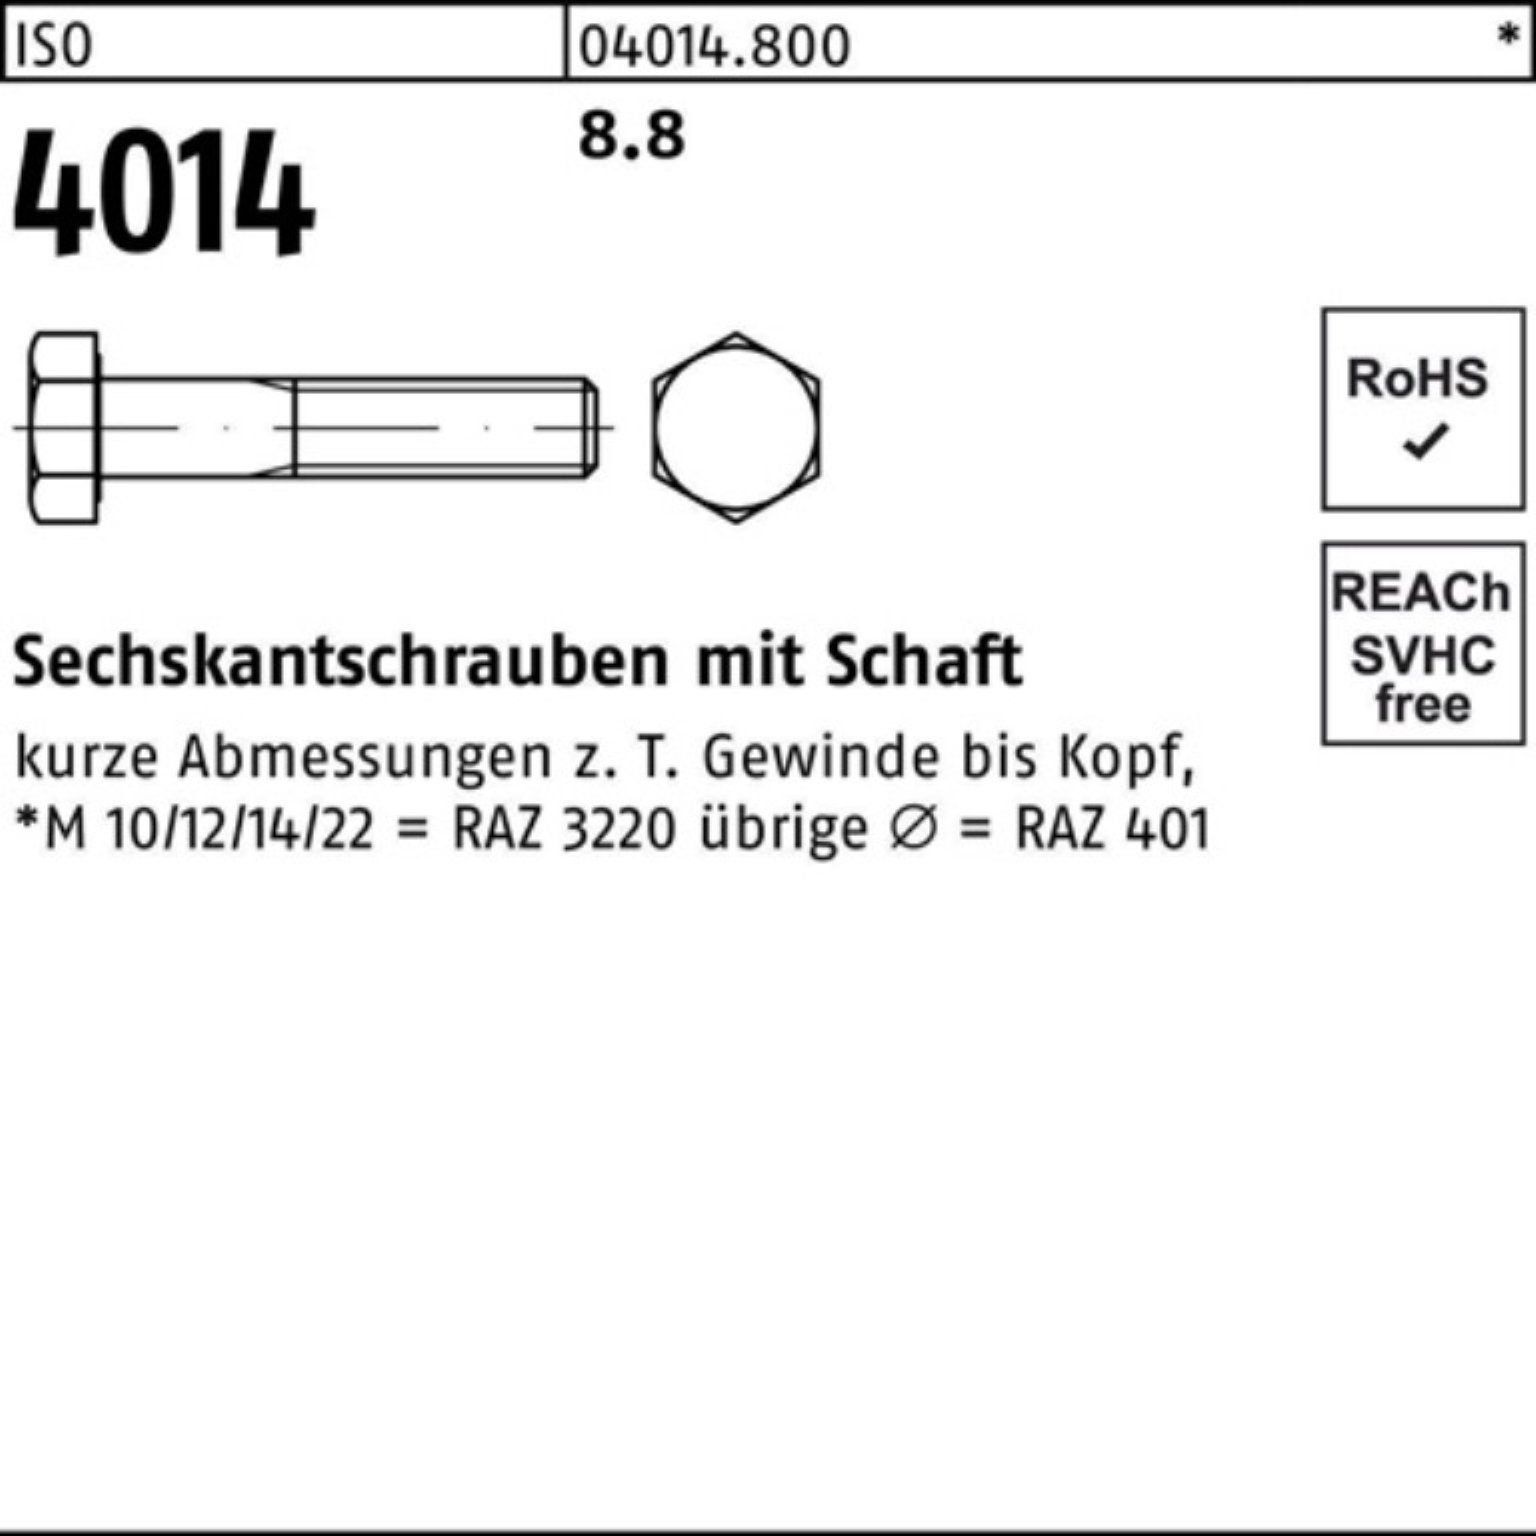 Sechskantschraube 290 Stück 1 4014 Pack ISO ISO Schaft Sechskantschraube Bufab M16x 8.8 100er